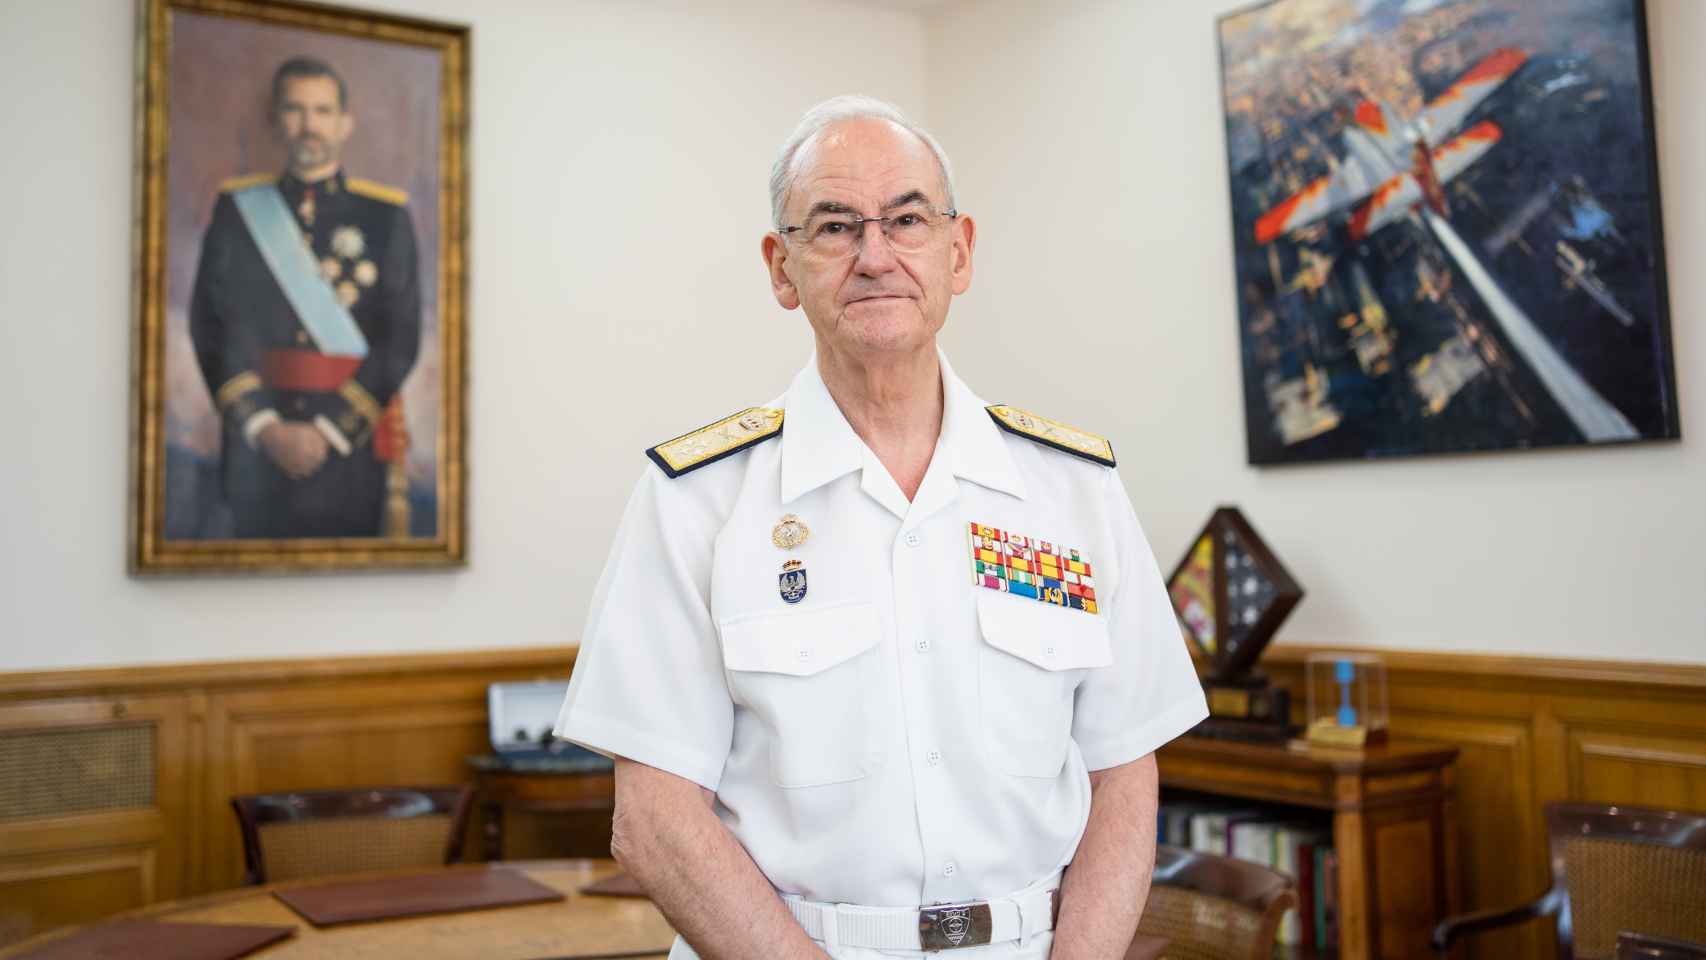 El JEMAD, Almirante General Teodoro Esteban López Calderón, en su despacho.